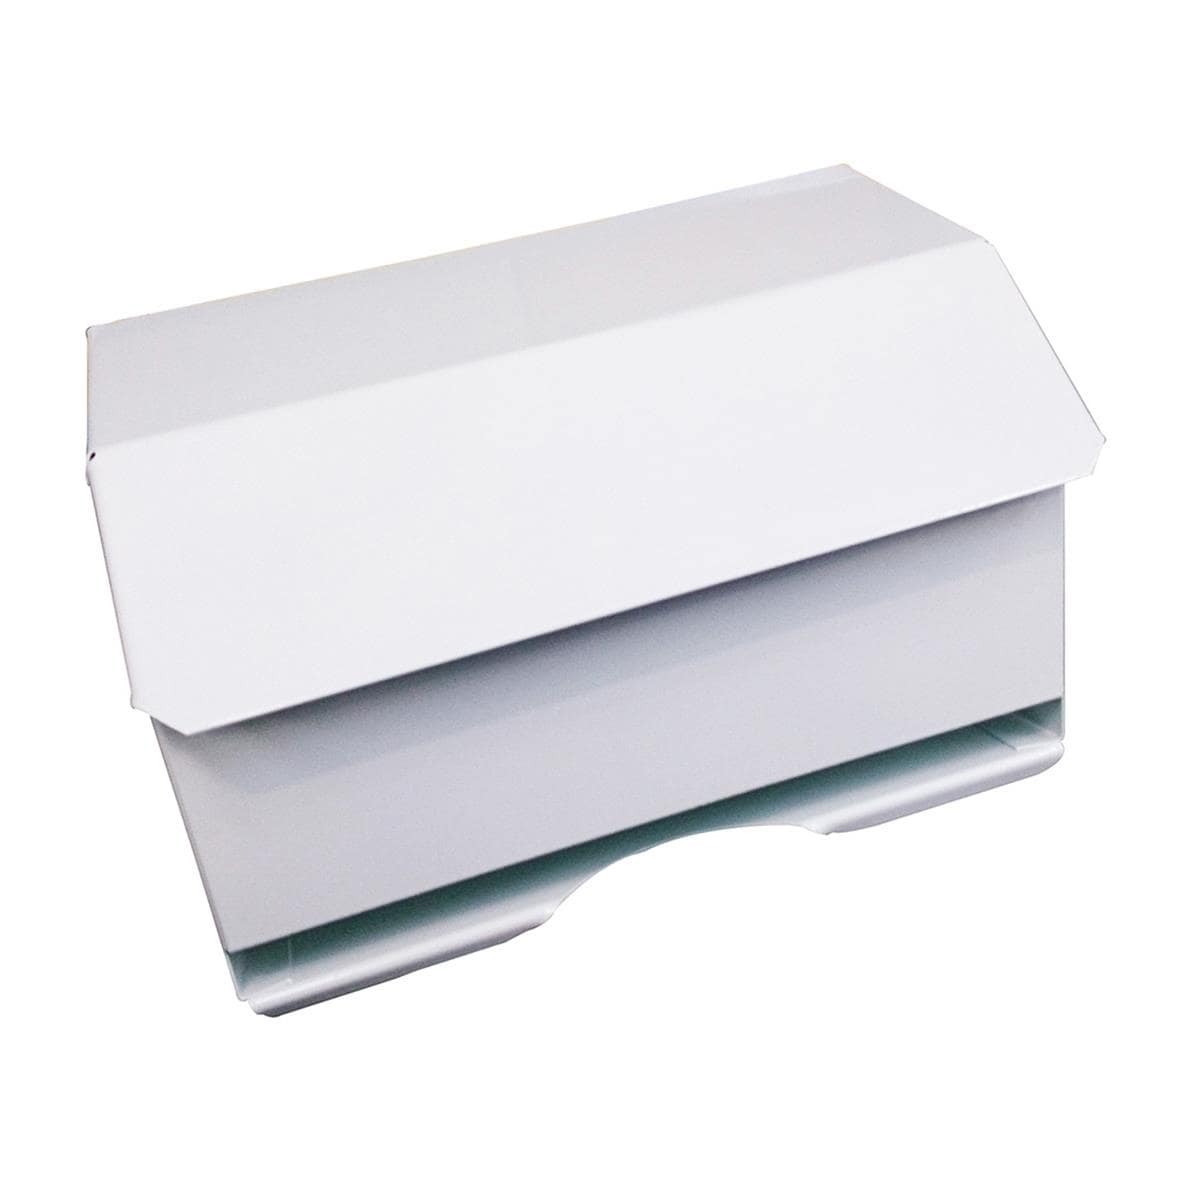 10" Paper Roll Dispenser White Metal